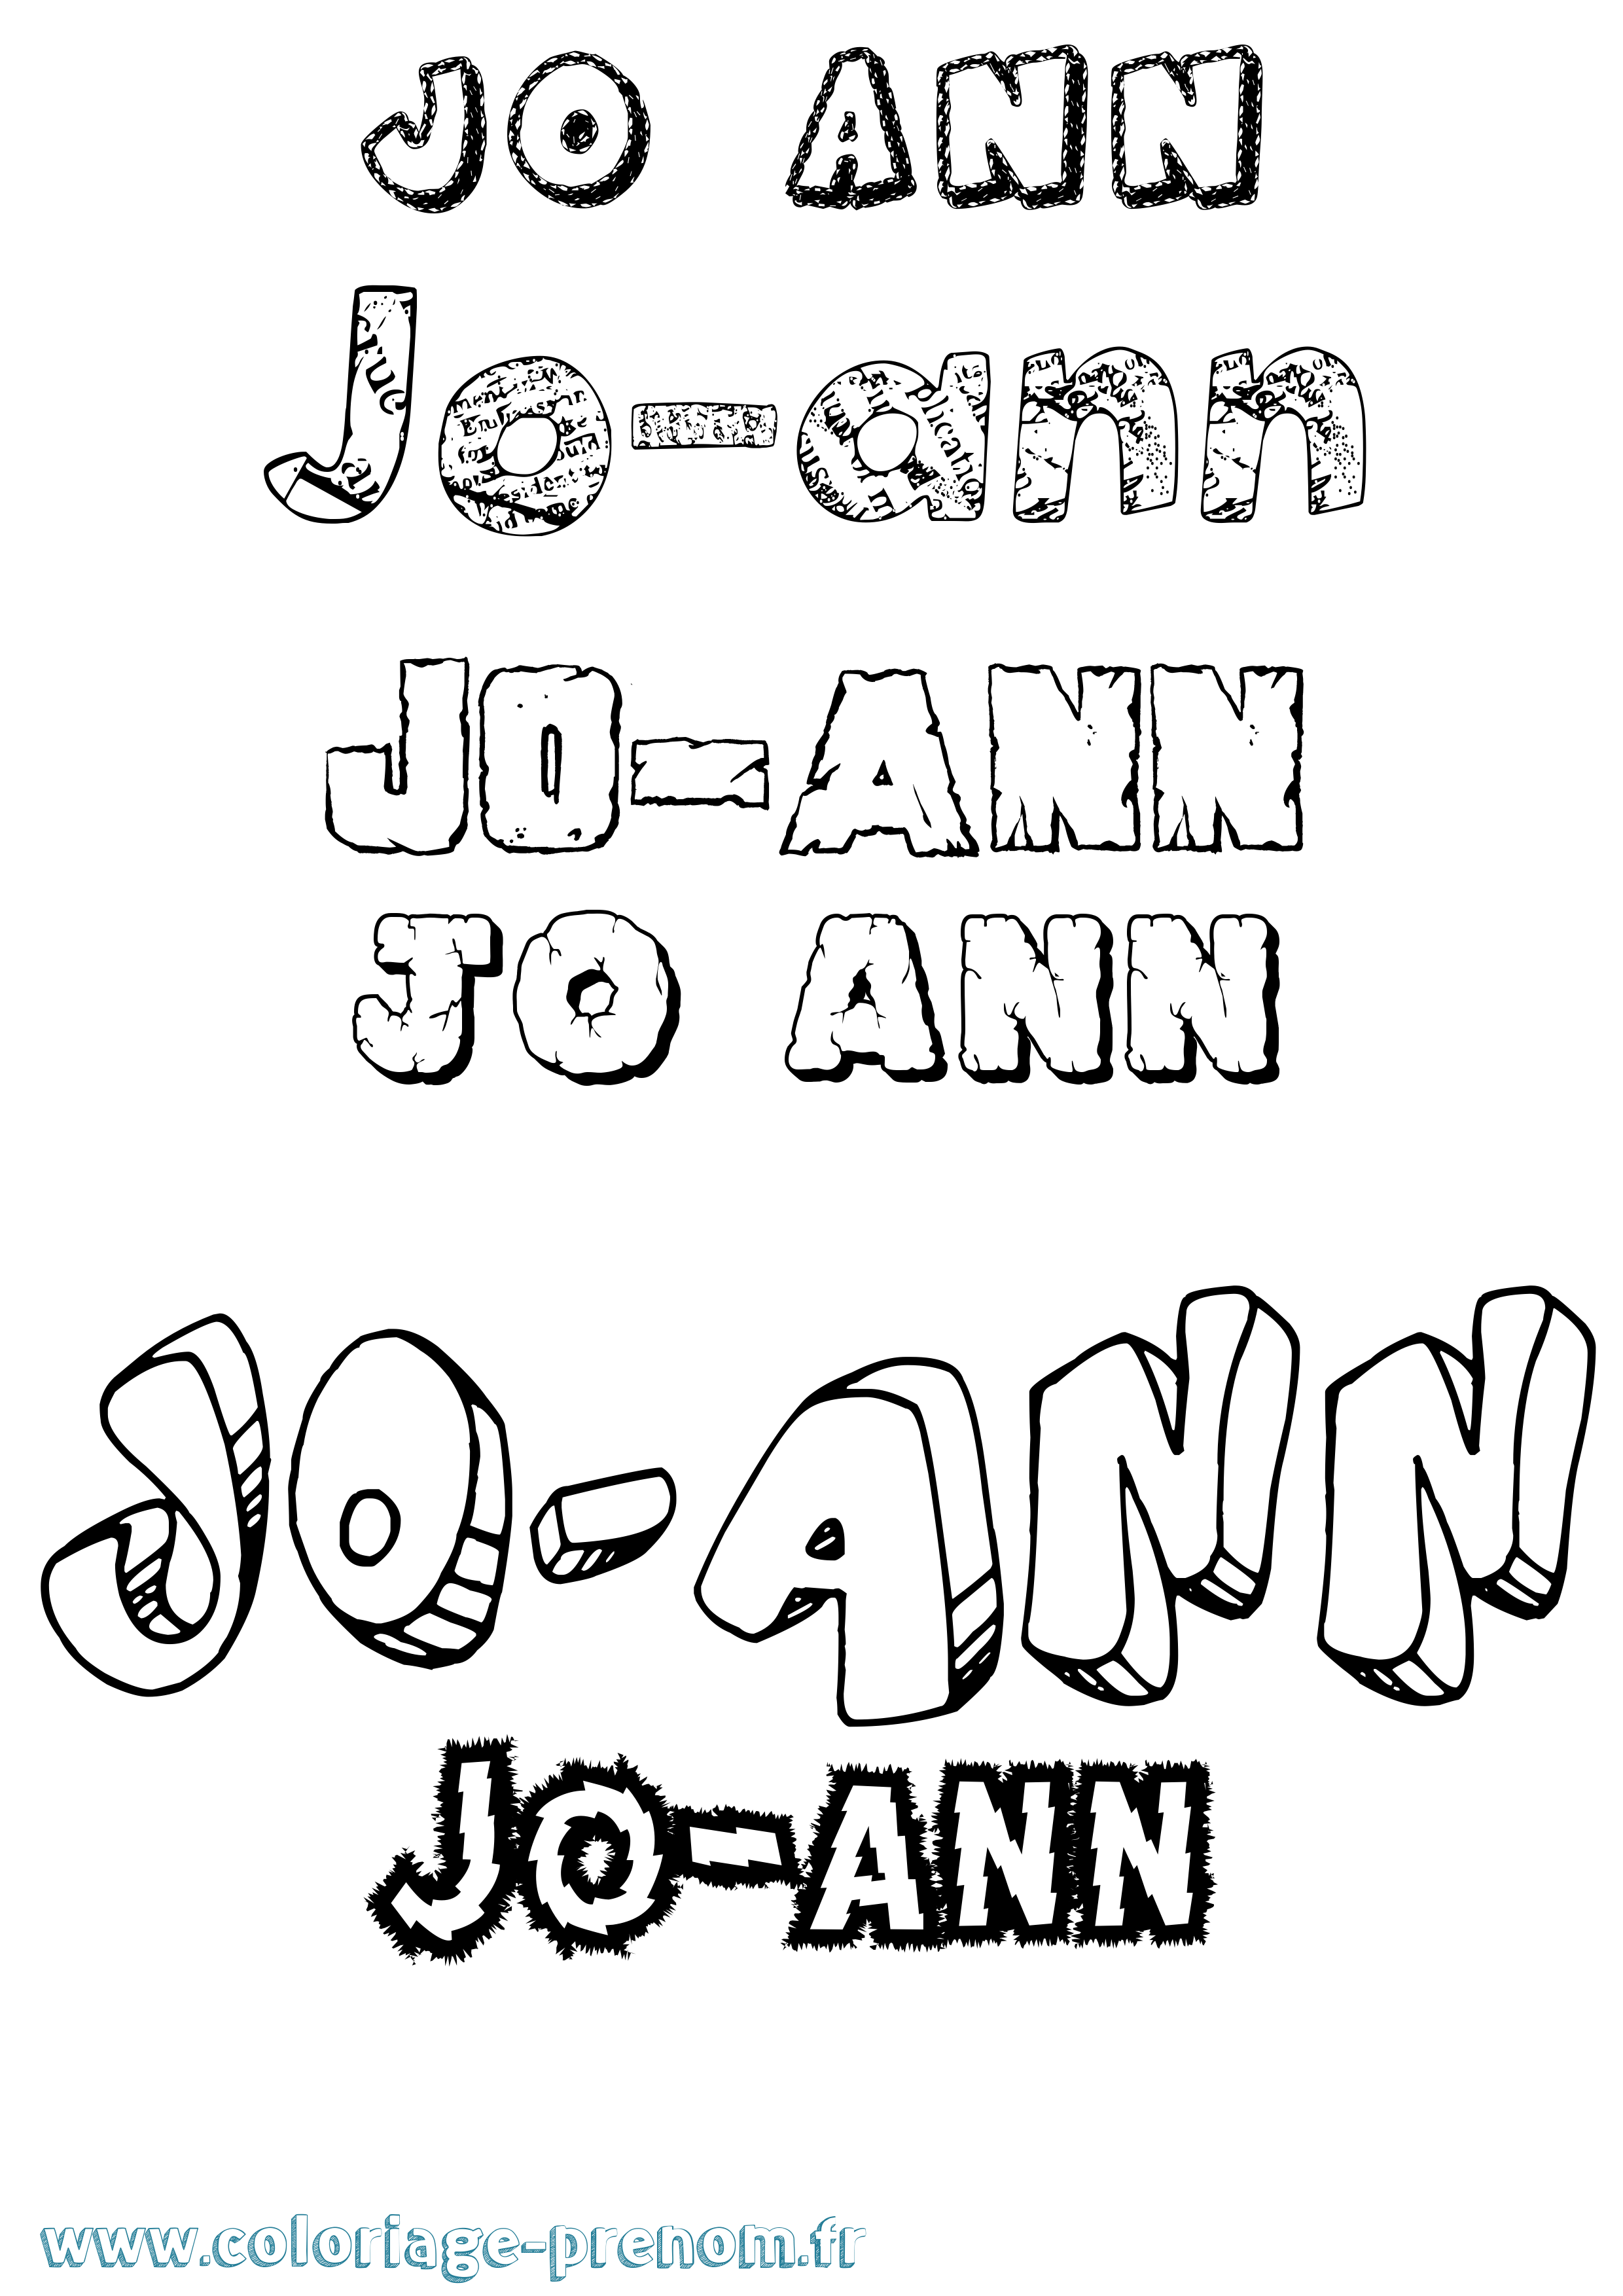 Coloriage prénom Jo-Ann Destructuré